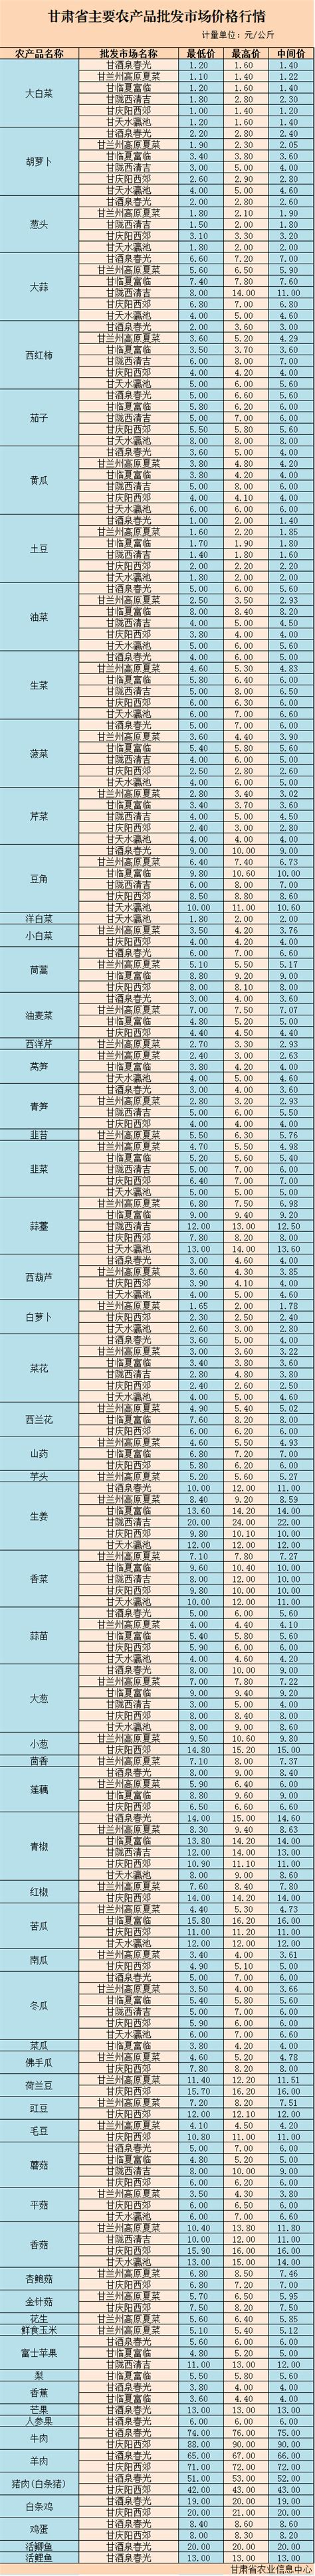 2021年1月16日甘肃省主要农产品价格信息-搜狐大视野-搜狐新闻